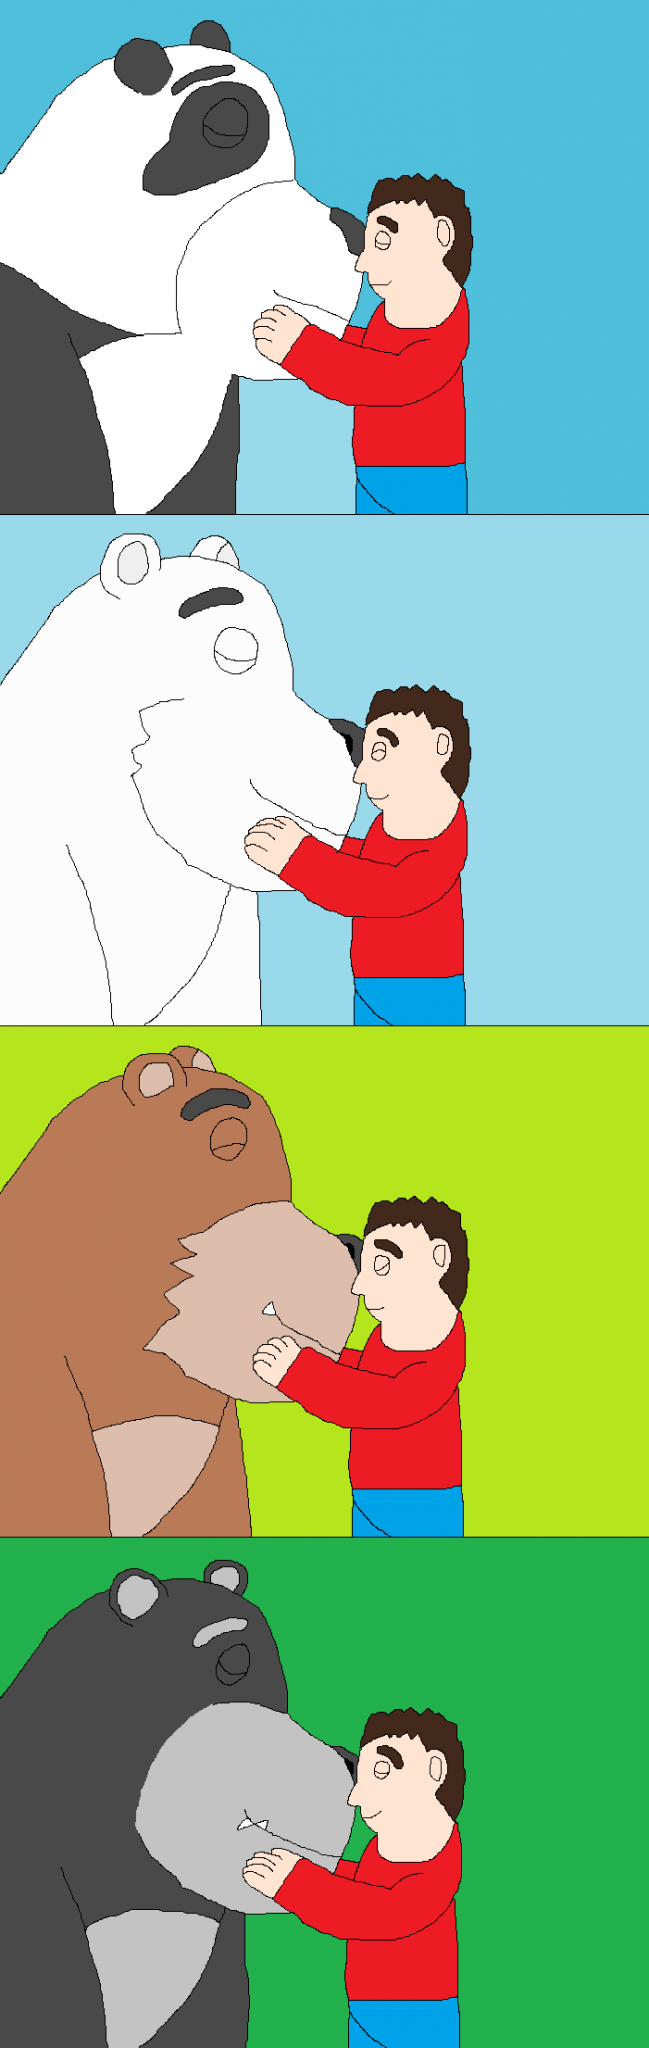 Meine Liebe zu den Bären